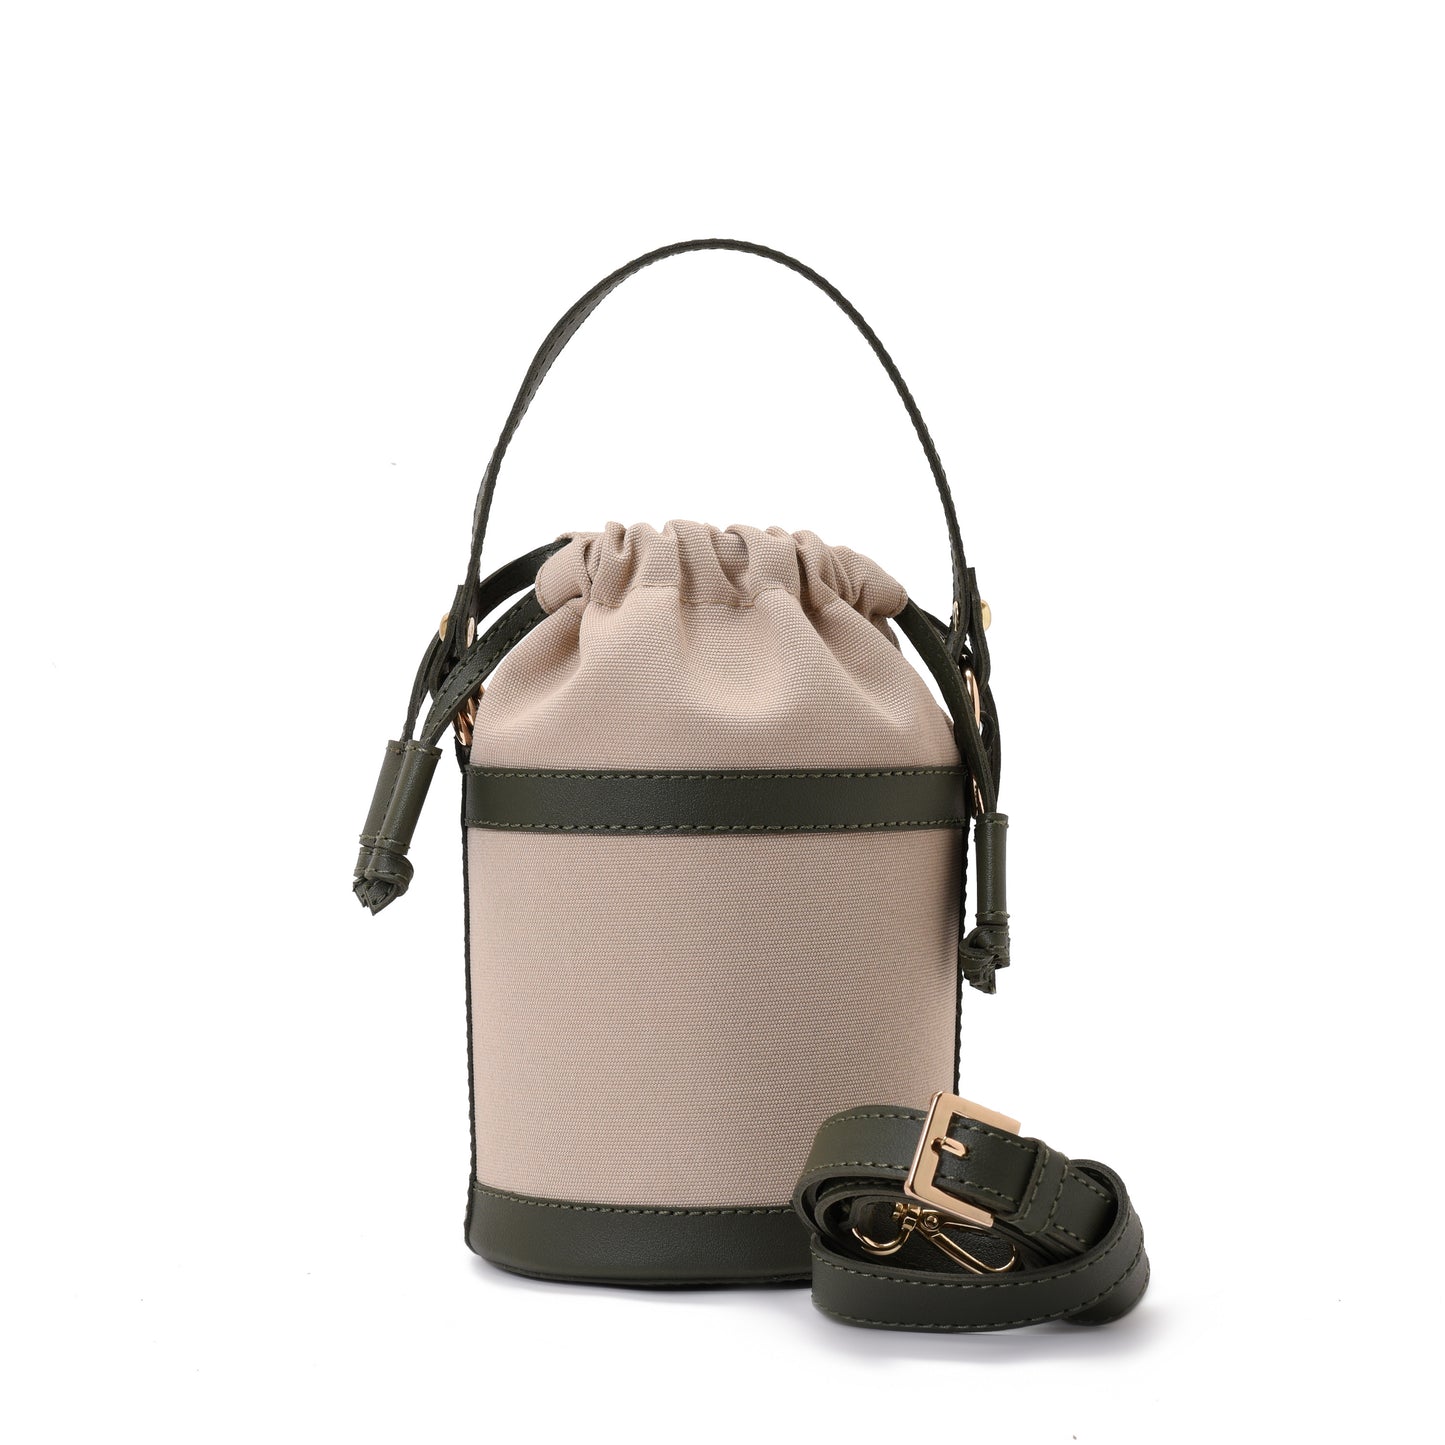 Retro bucket Beige Handbag with Green belt -Code 911